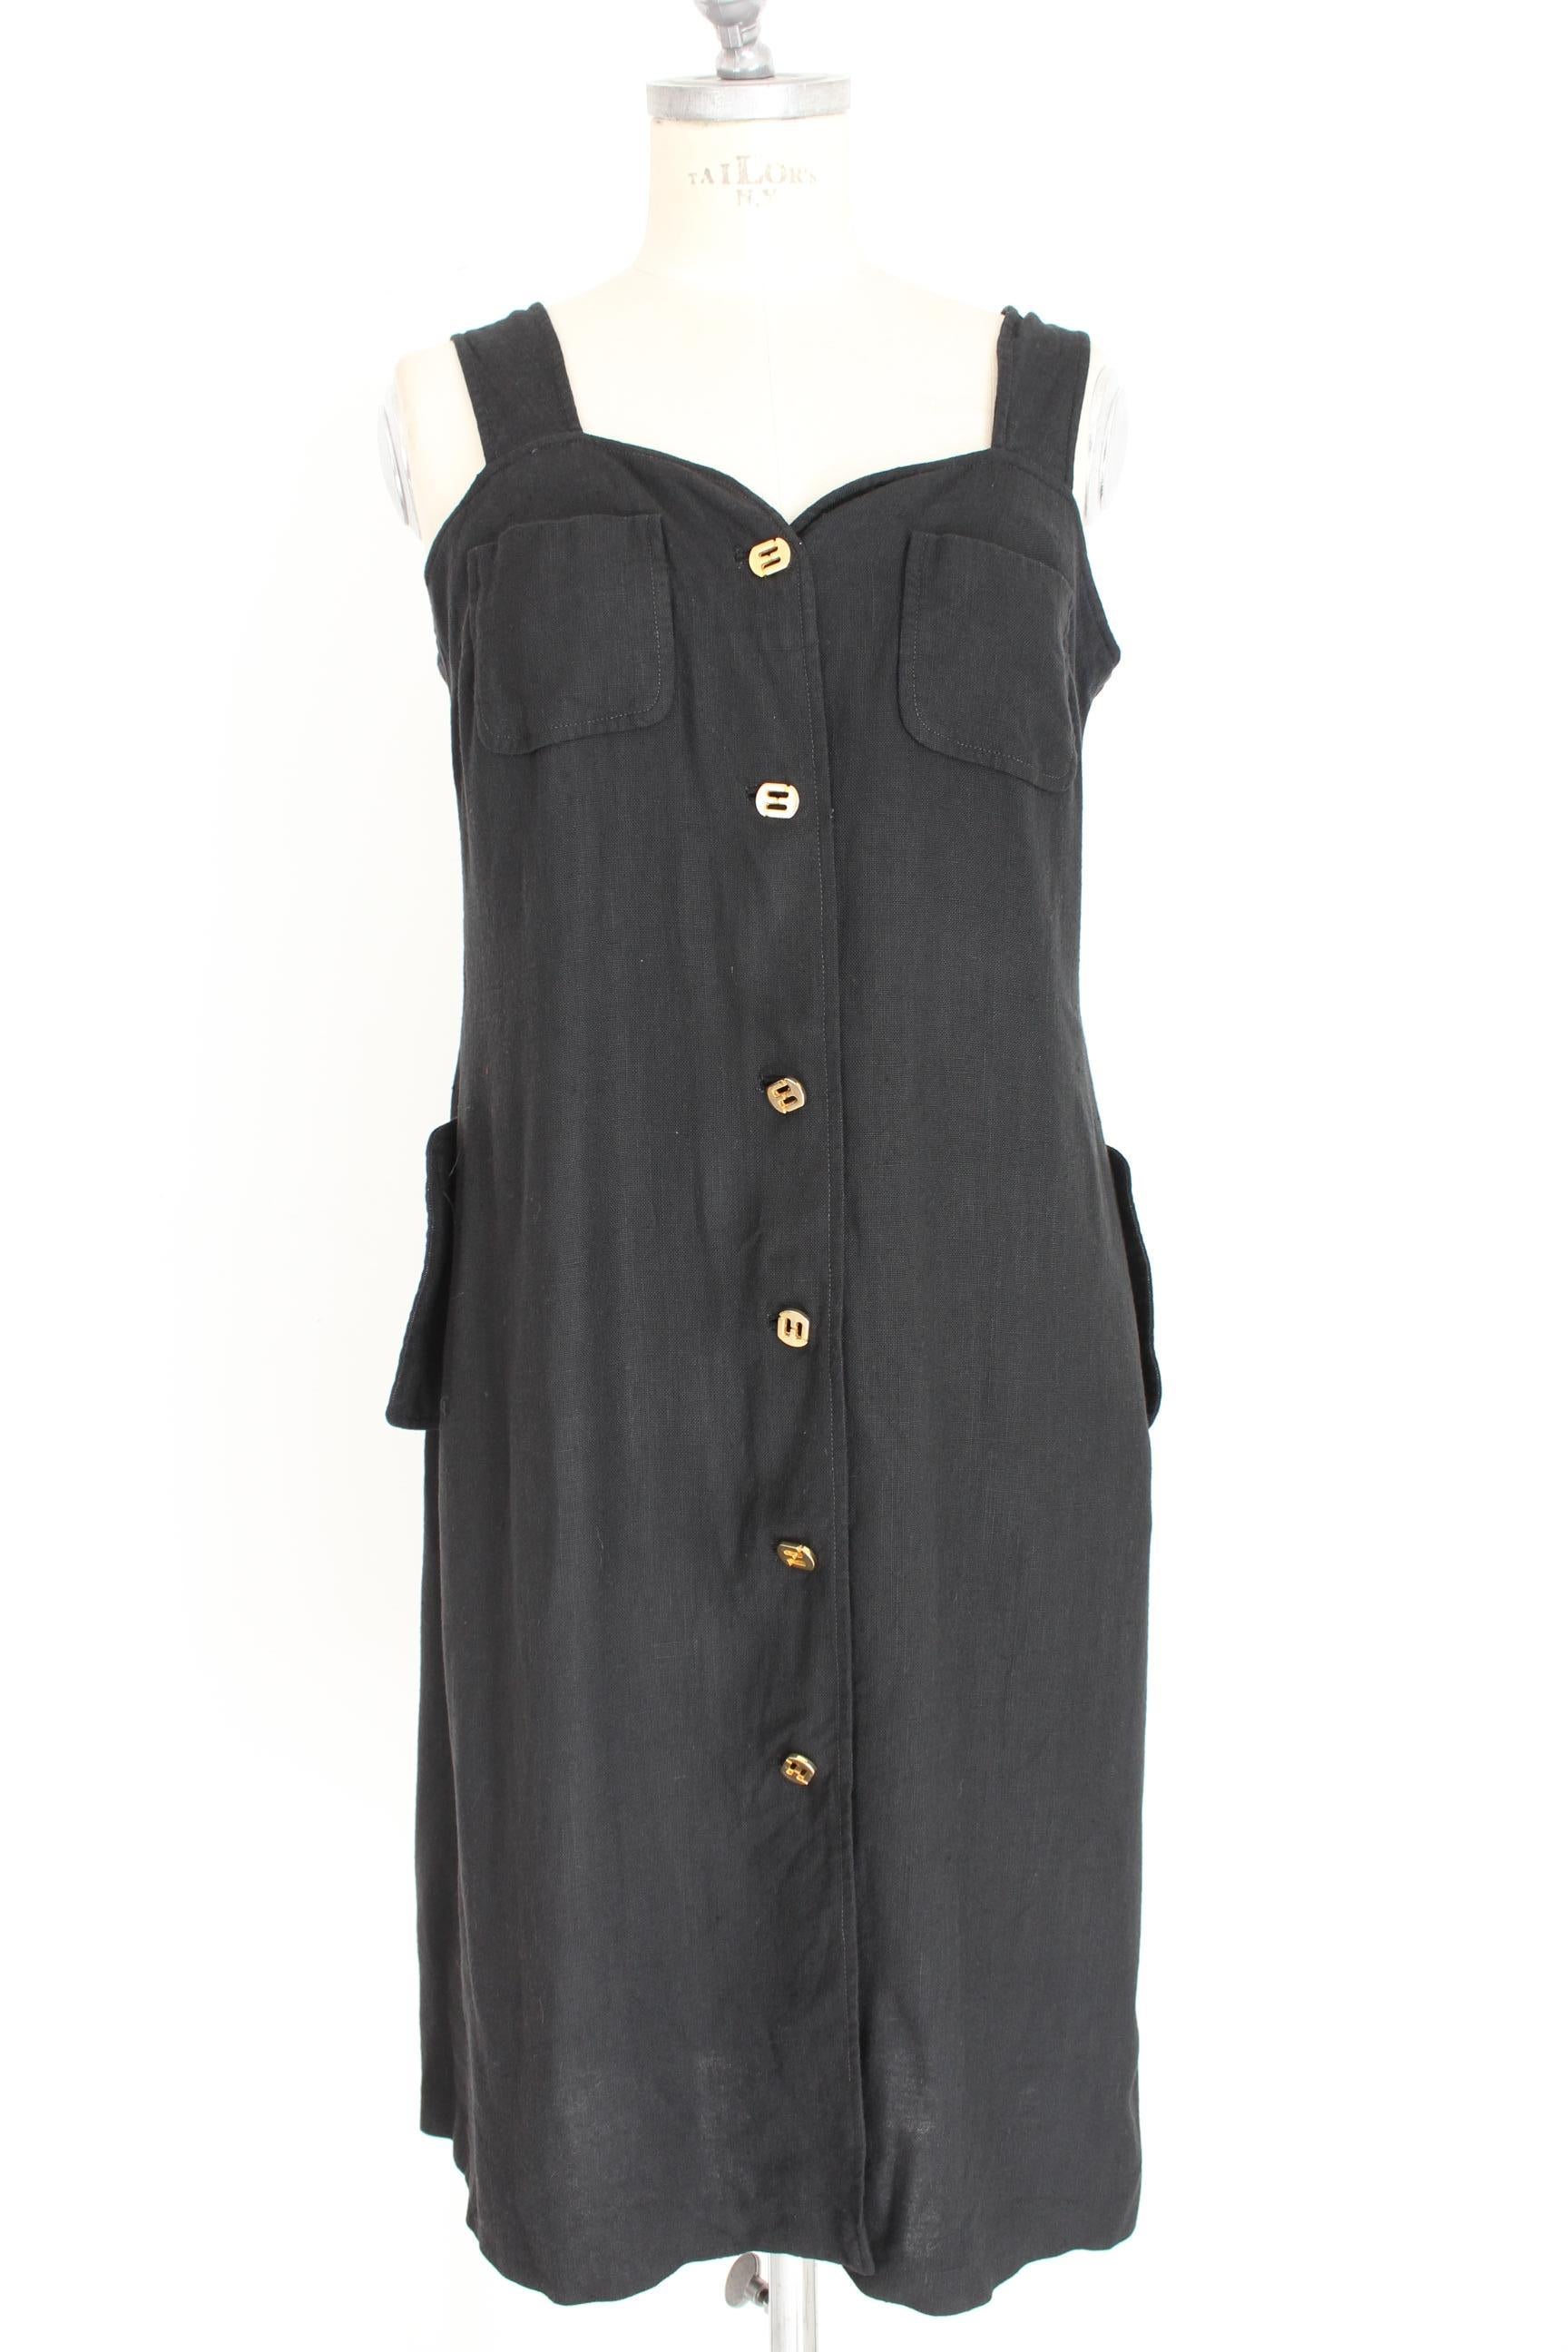 Women's Salvatore Ferragamo Black Cocktail Suit Dress 1990s For Sale